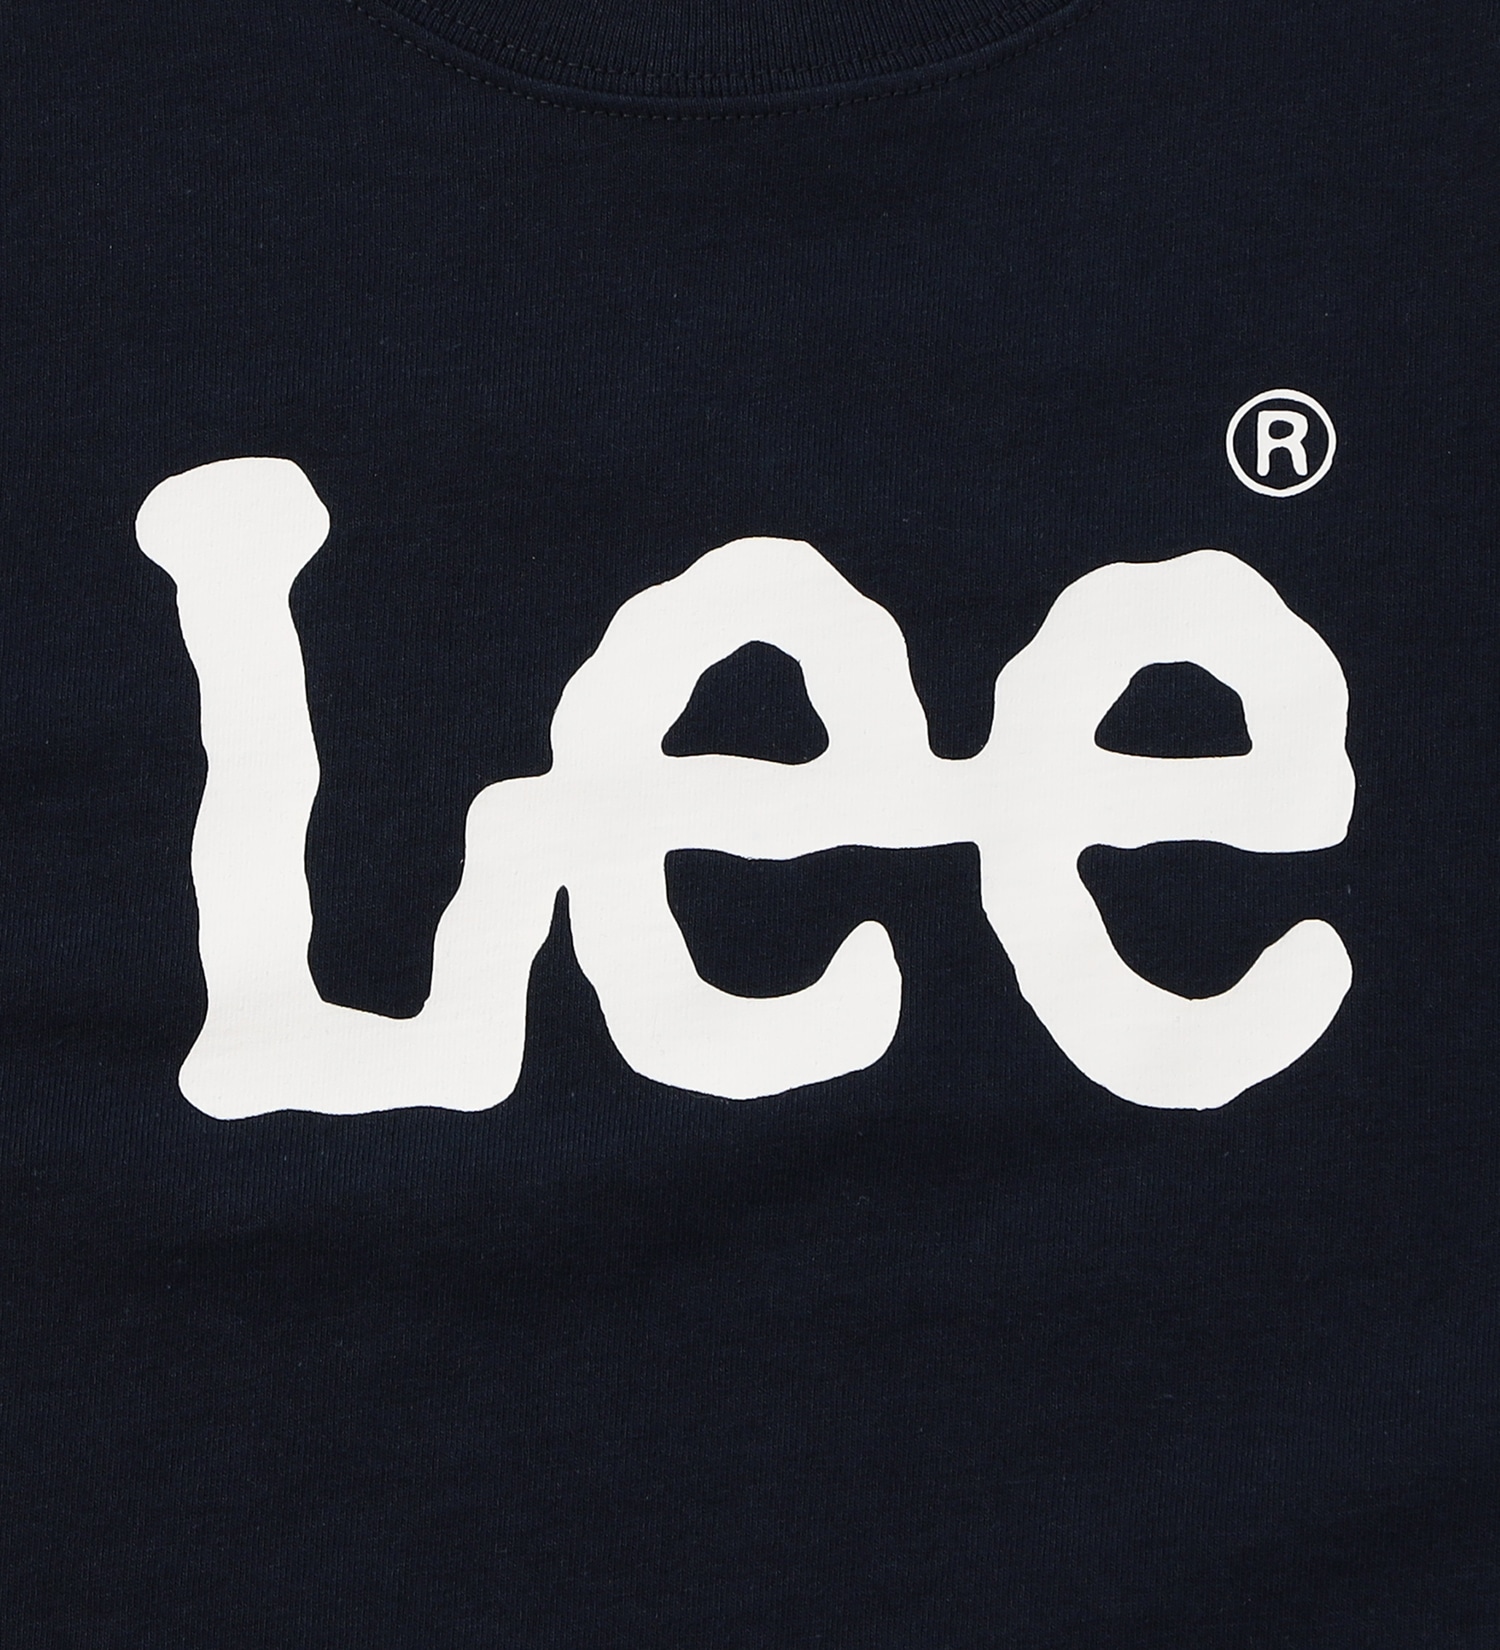 Lee(リー)の【110-150cm】キッズ Lee LOGO ショートスリーブ Tee|トップス/Tシャツ/カットソー/キッズ|ネイビー